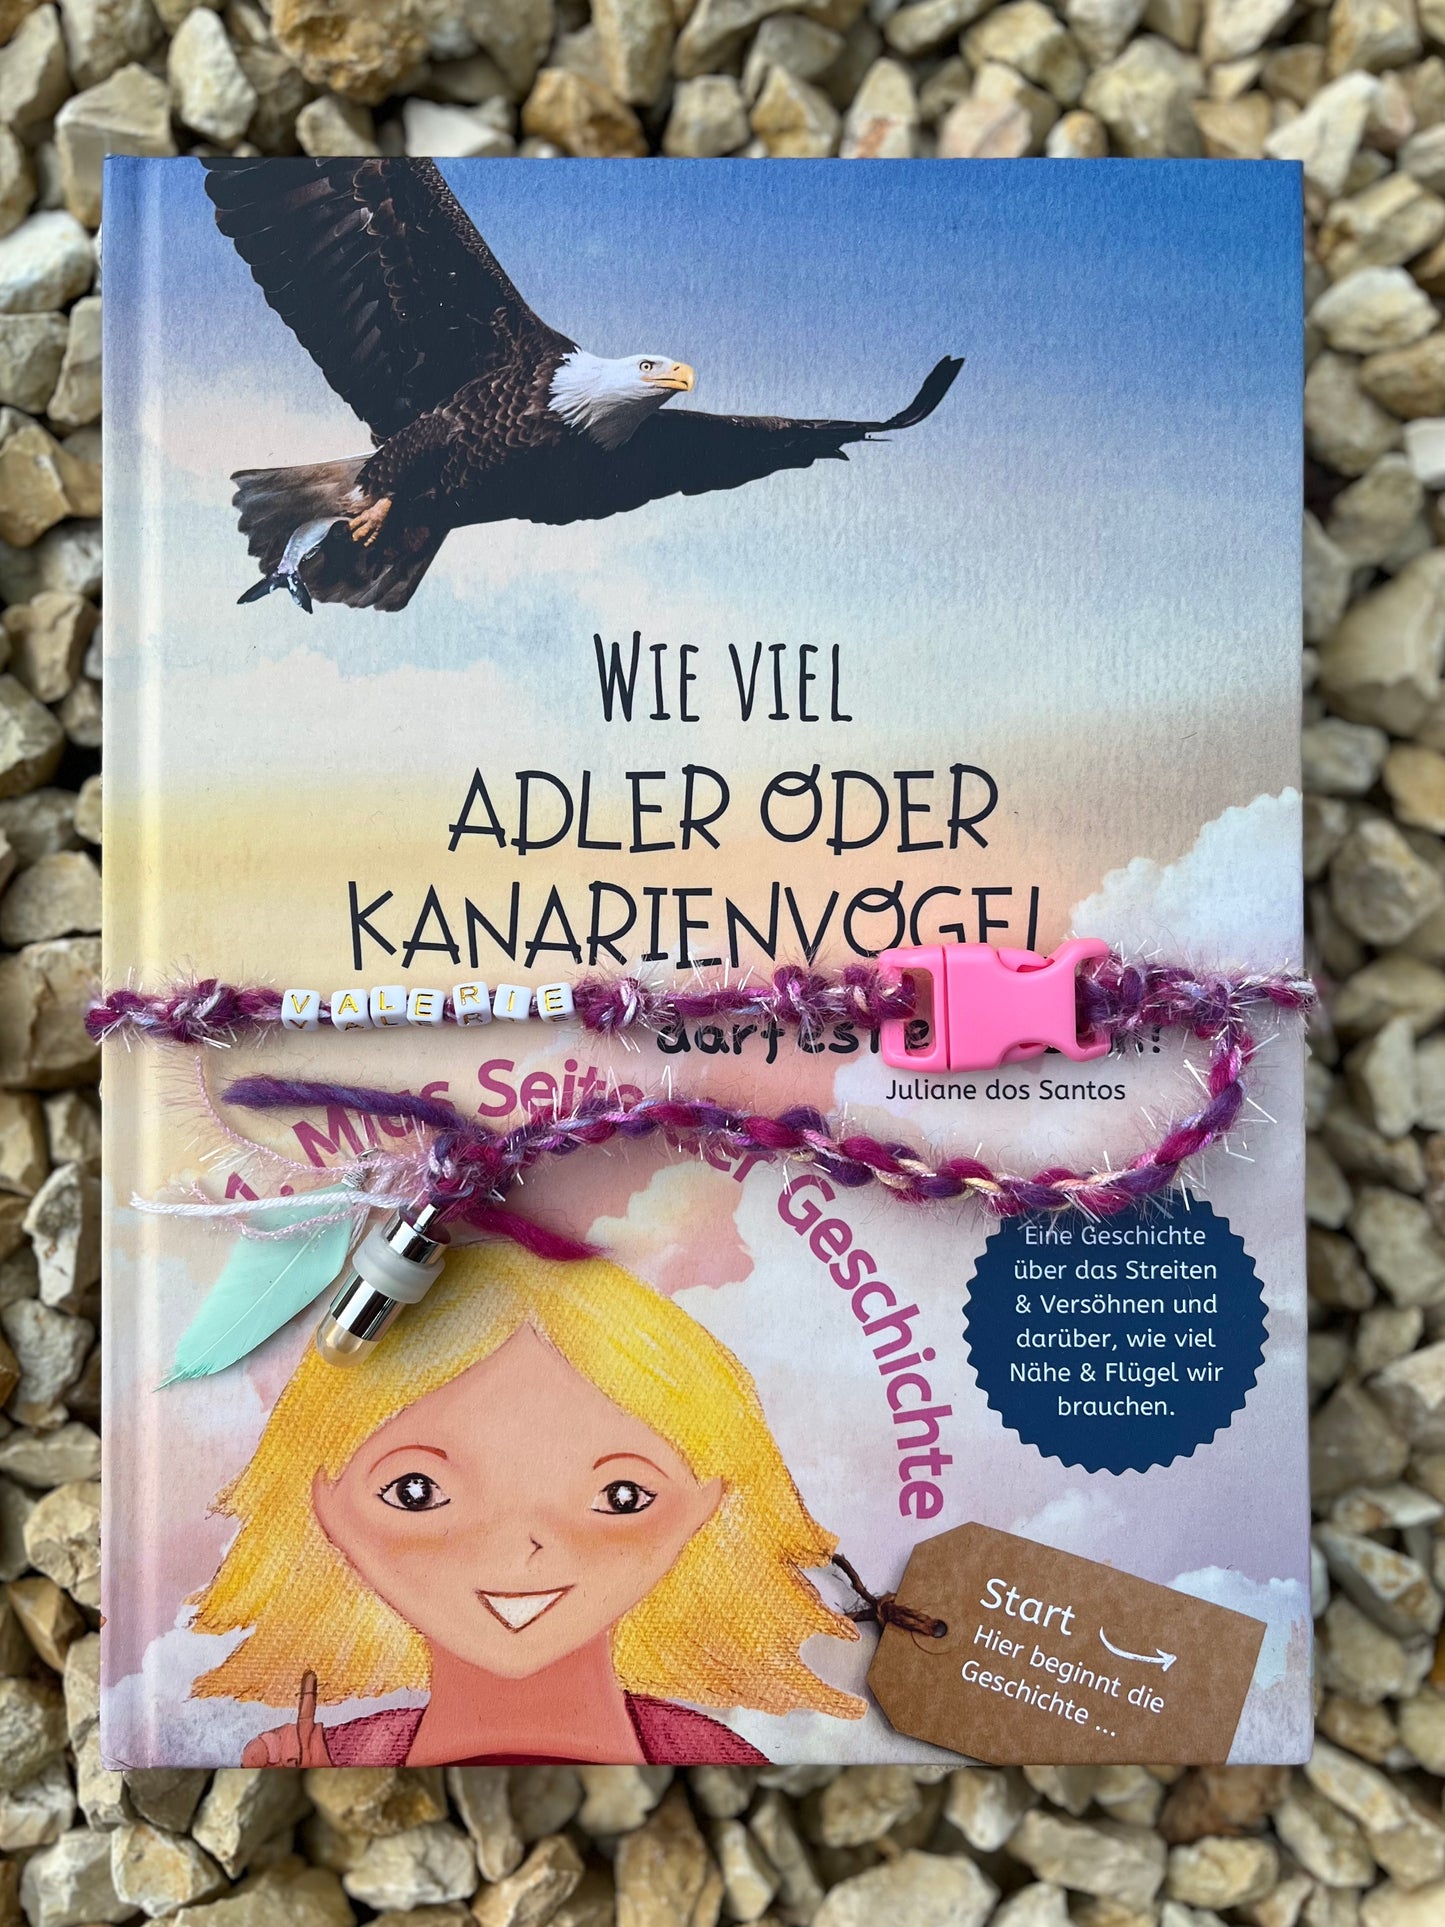 Kinderbuch „Adler oder Kanarienvogel" - Als handmade Geschenkset inklusive Namen deines Kindes Anhänger und Lampe ISBN-13 979-8386980870